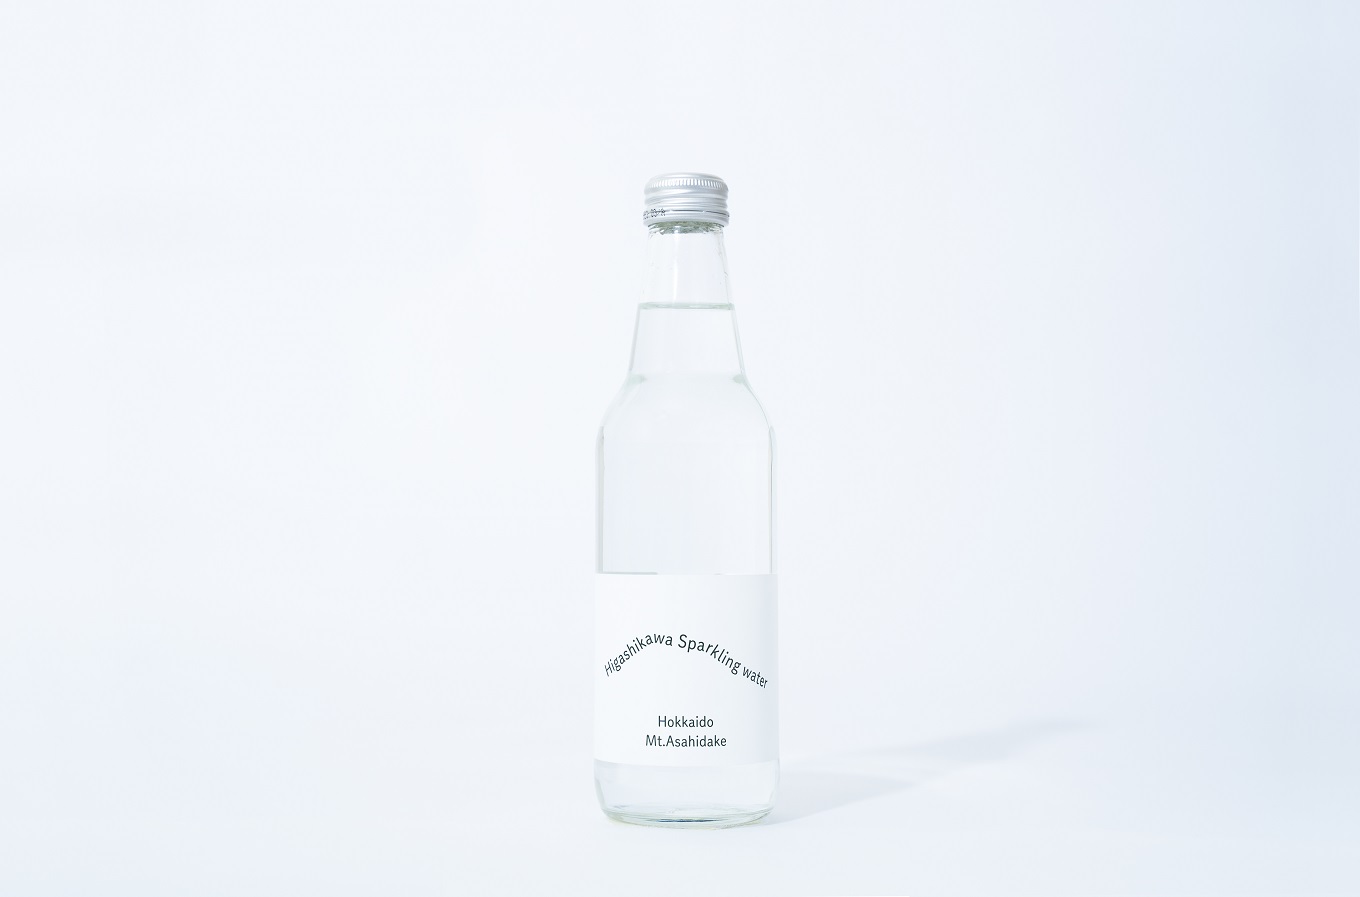 Higashikawa Sparkling water (東川スパークリングウォ―ター）Basic:微発泡タイプ 12本入り【22001203】